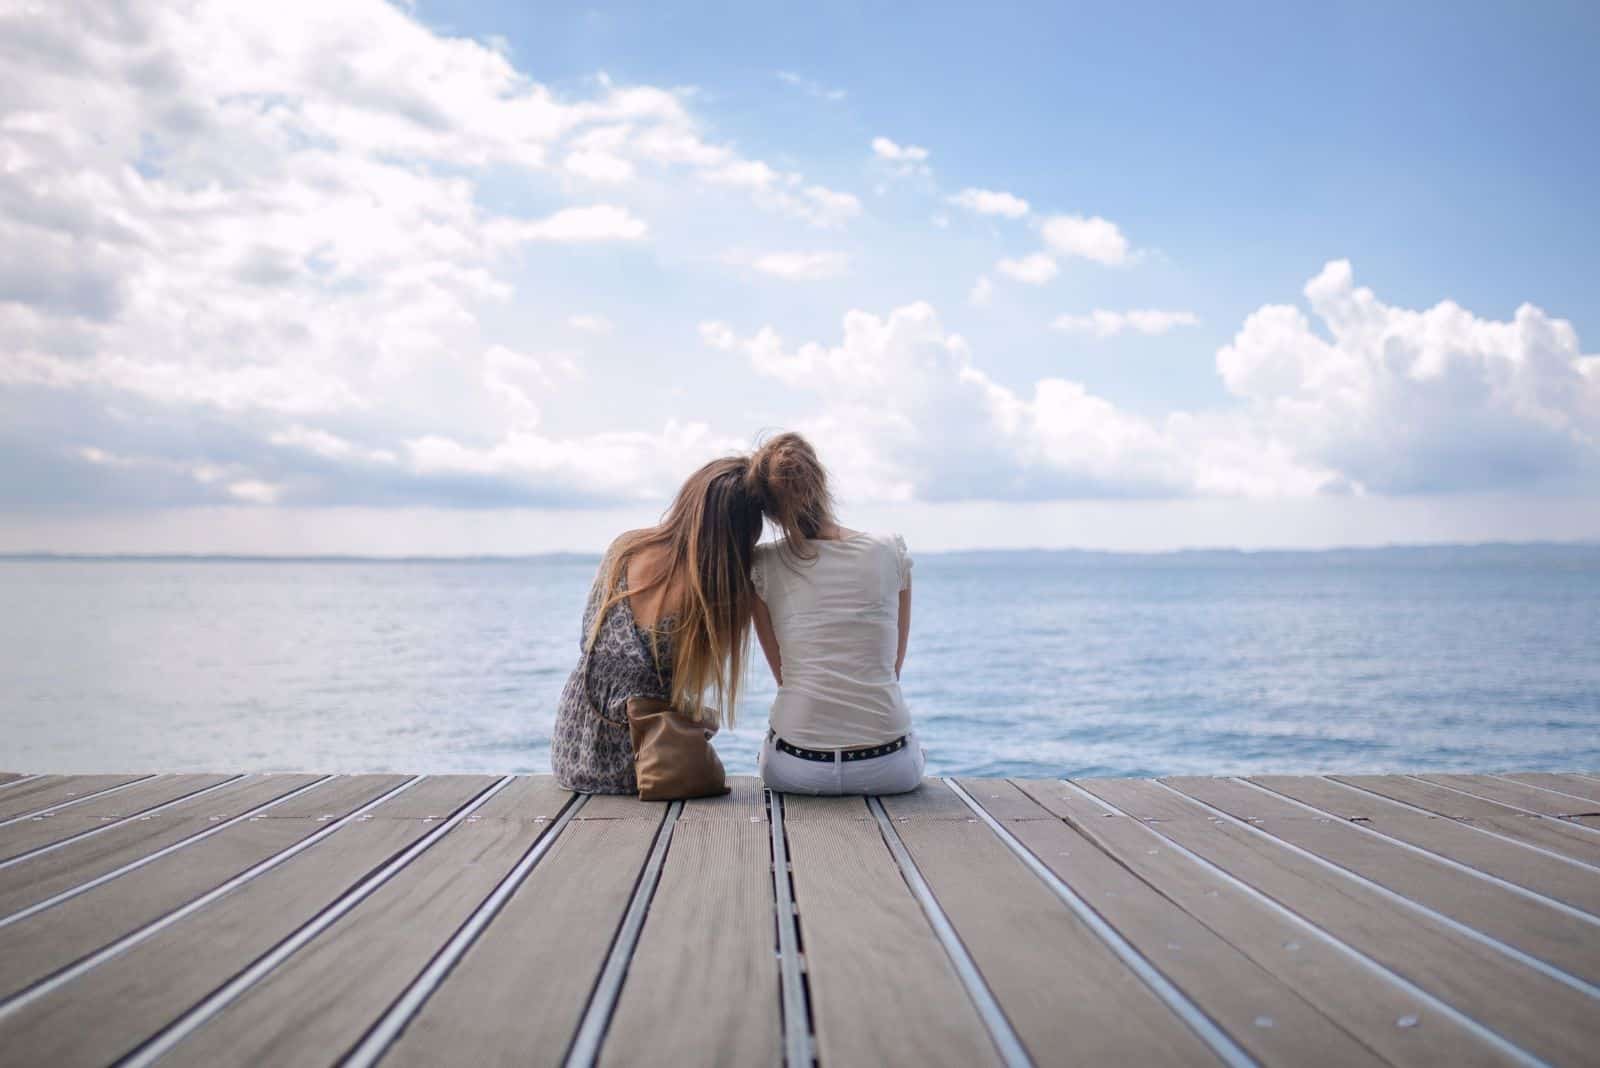 due amici seduti su una ragnatela di fronte al mare, appoggiati l'uno all'altro, guardano il bellissimo panorama 